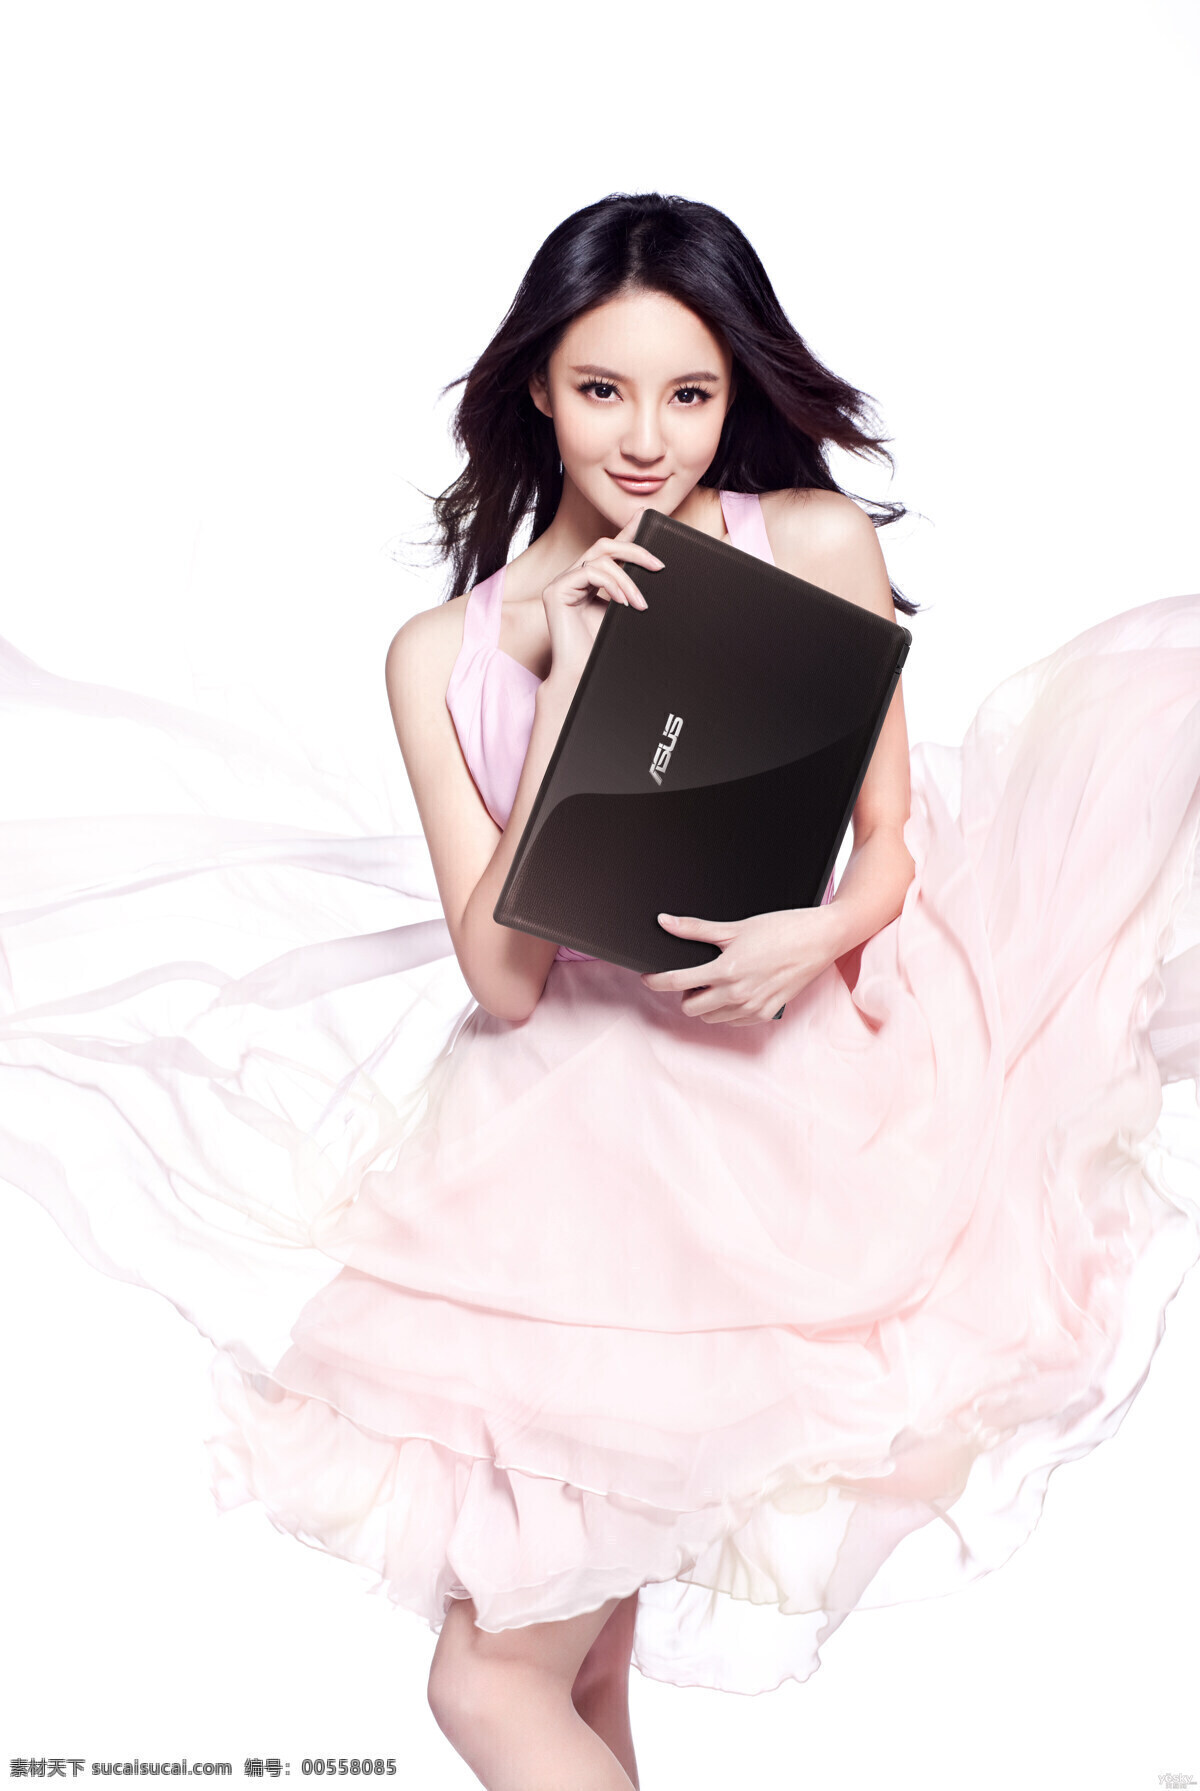 刘雨欣 美女 性感 身材 笔记本 电脑 海报 广告 代言 裙子 明星 美女明星 明星偶像 人物图库